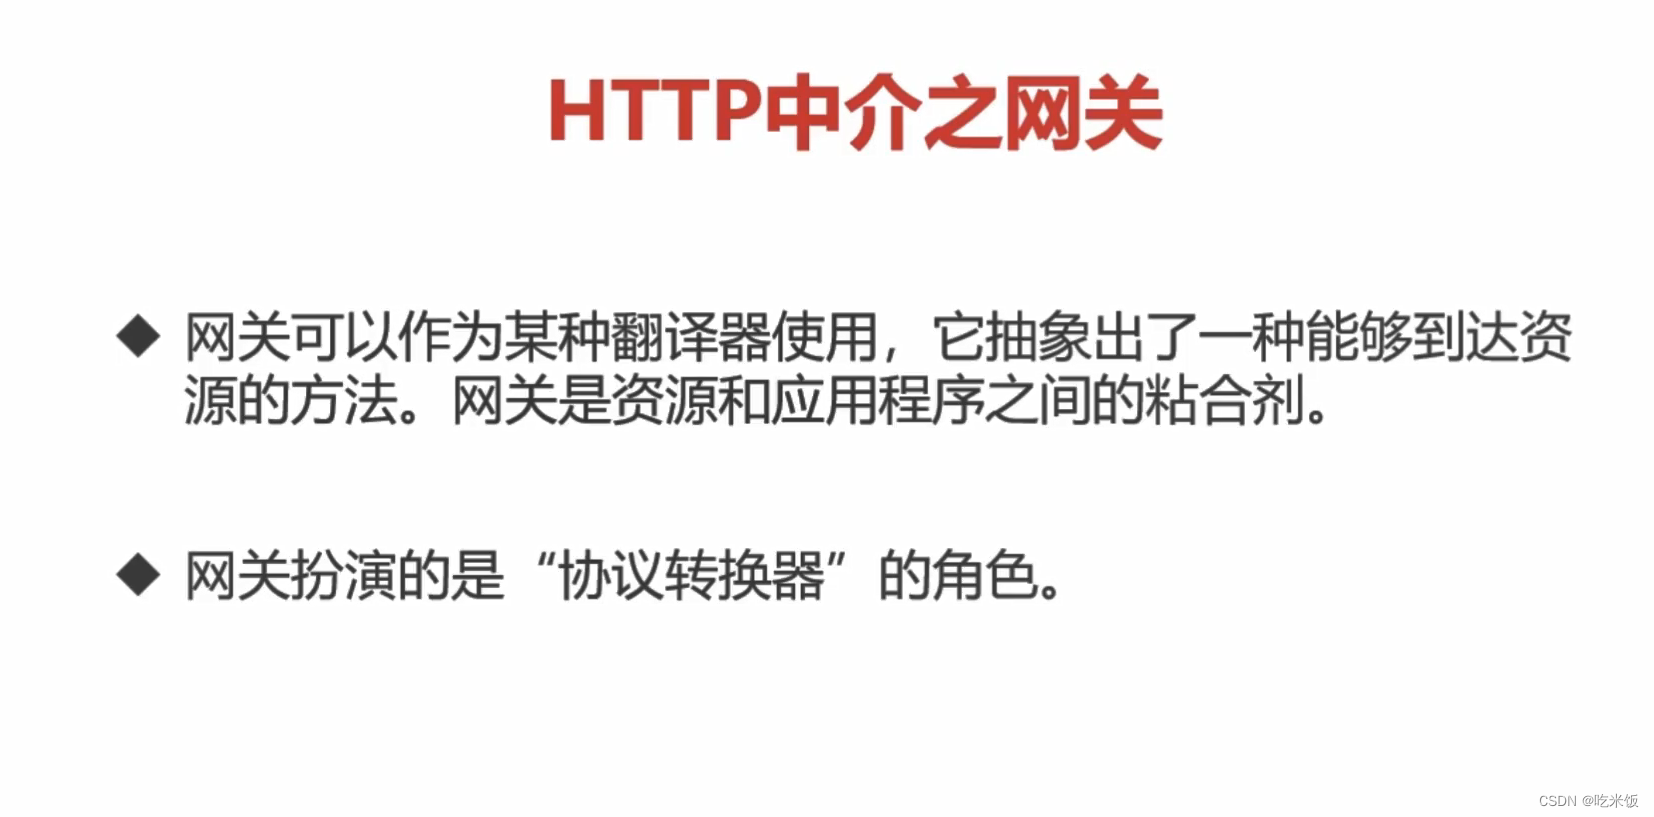 HTTP长连接和短链接代理与网关